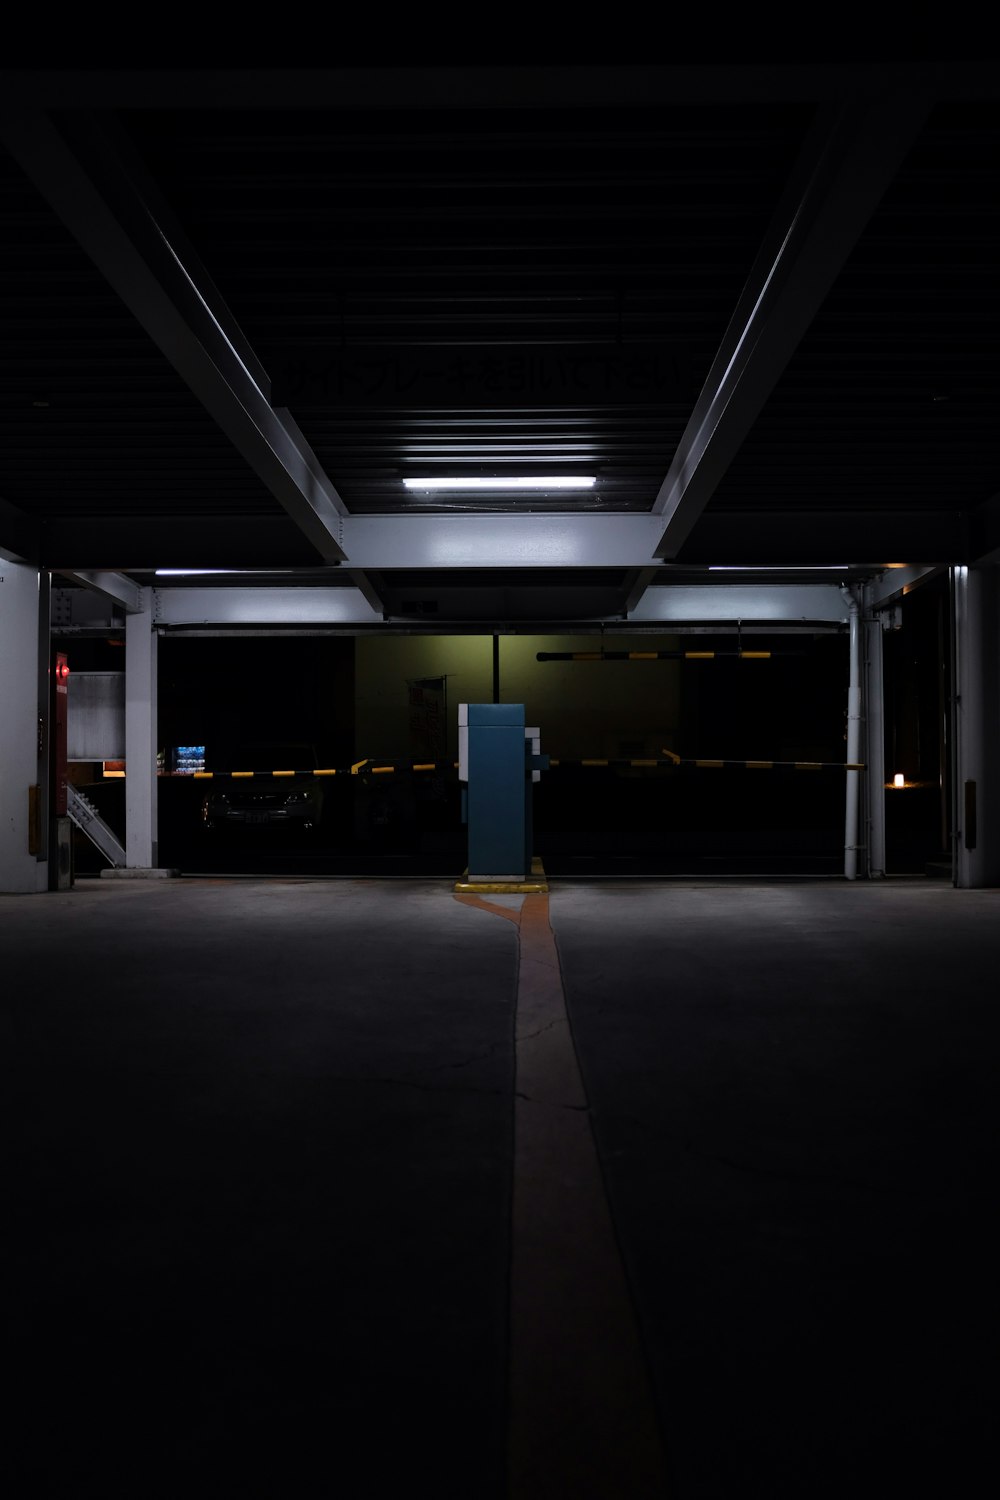 empty indoor parking lot